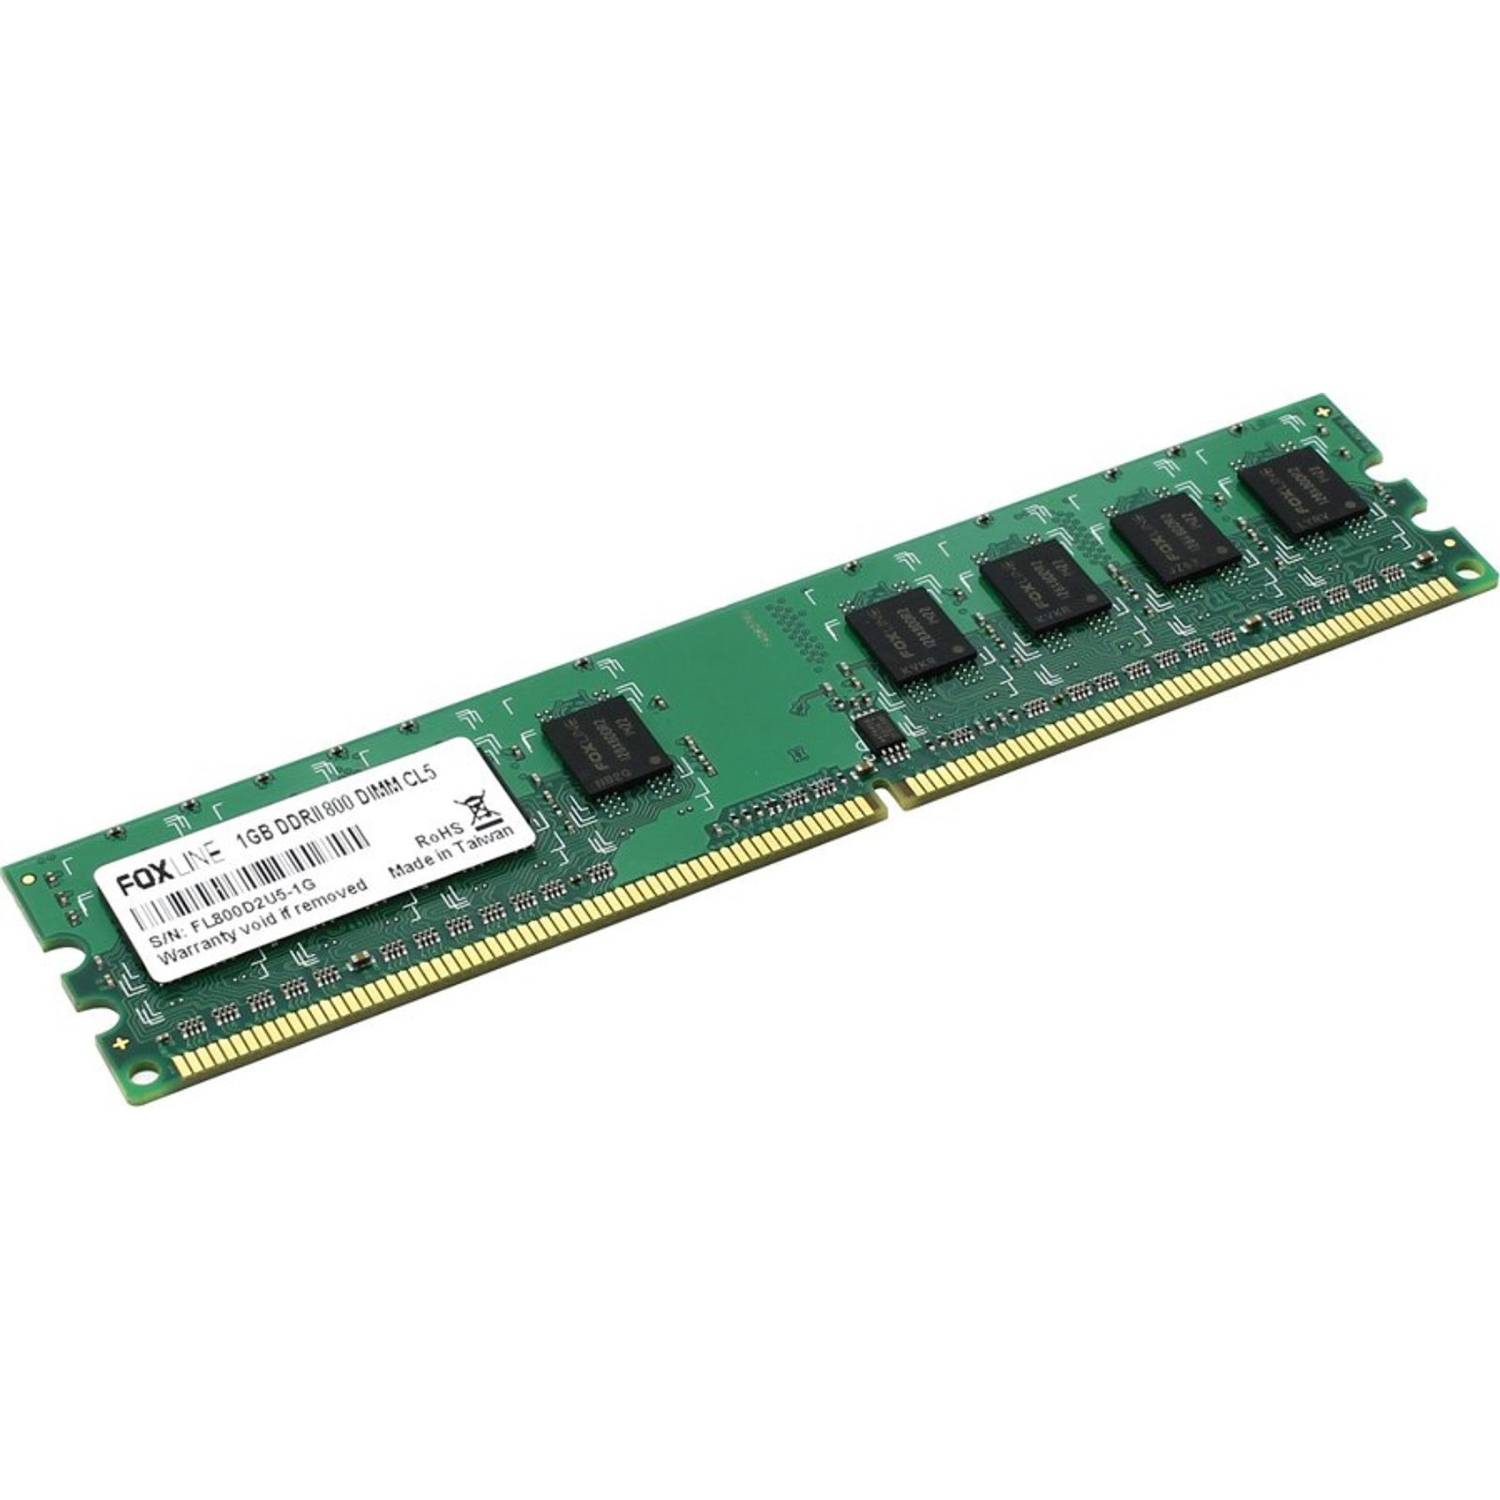 Оперативная память Foxline 1GB DDR2 DIMM (FL800D2U5-1G) оперативная память foxline dimm 2gb ddr3 1600 fl1600d3u11s1 2g